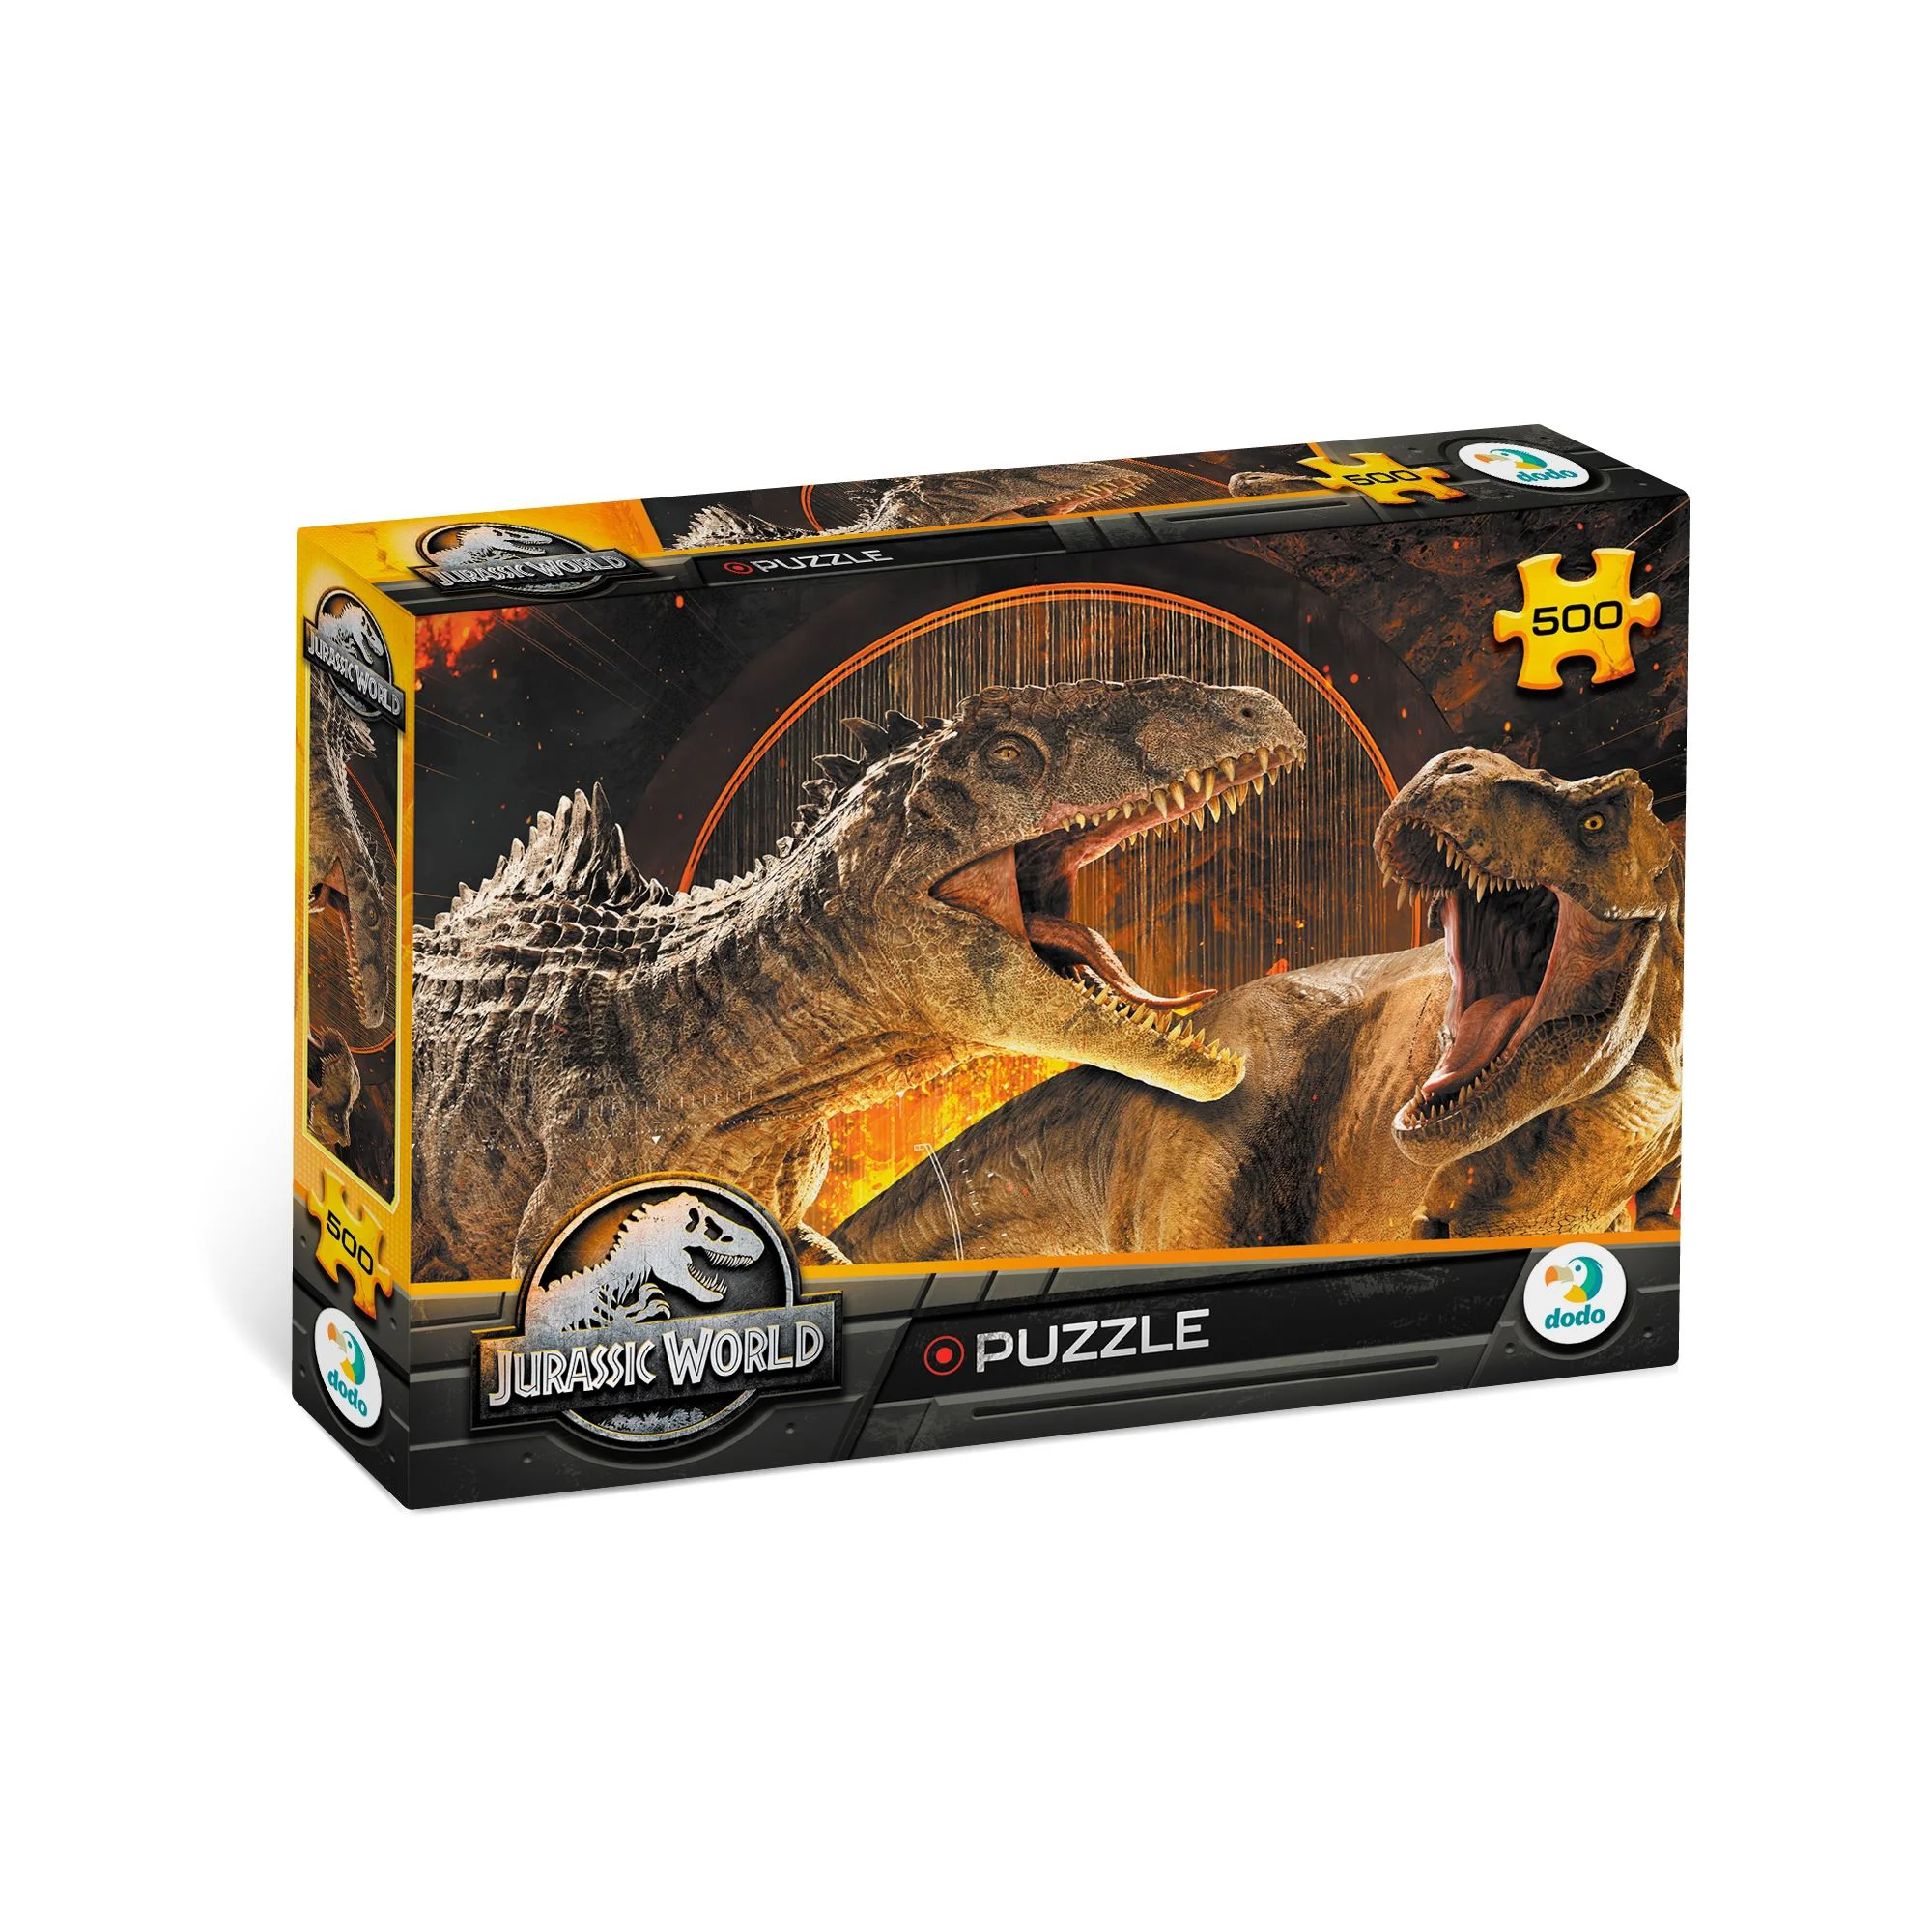 Puzzle cu efect soft touch Dodo Jurassic World Dominion, 500 el.